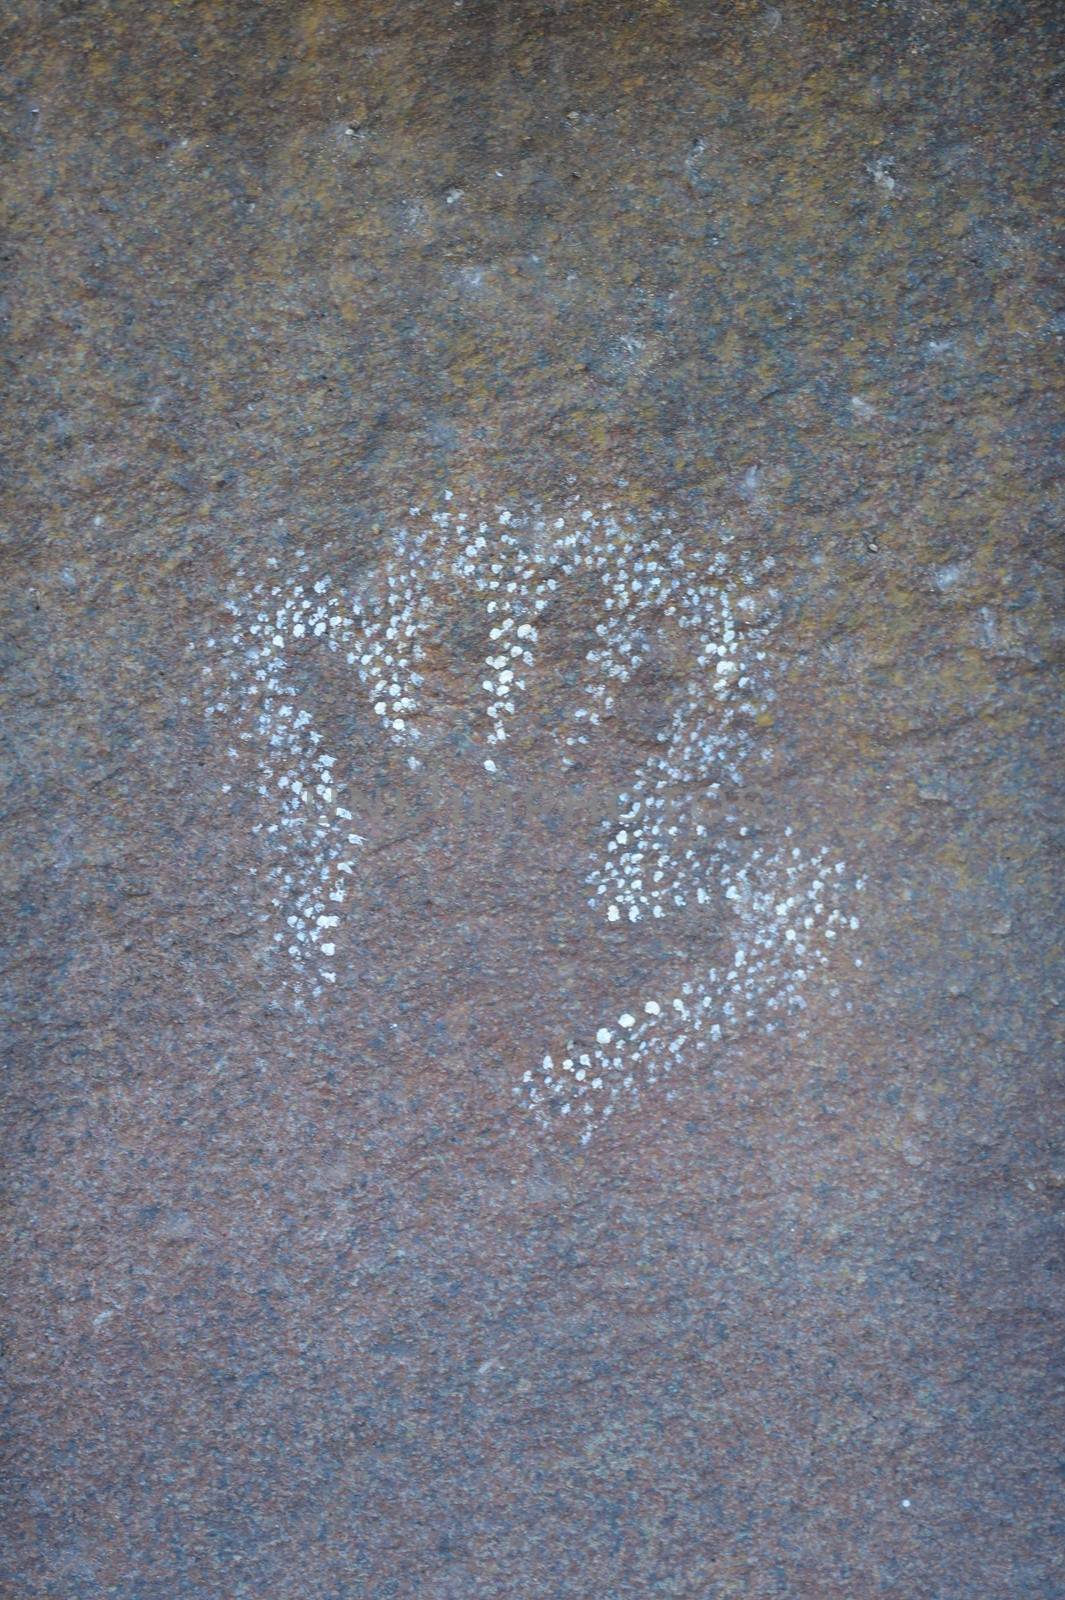 A shot of Australian imatation rock art